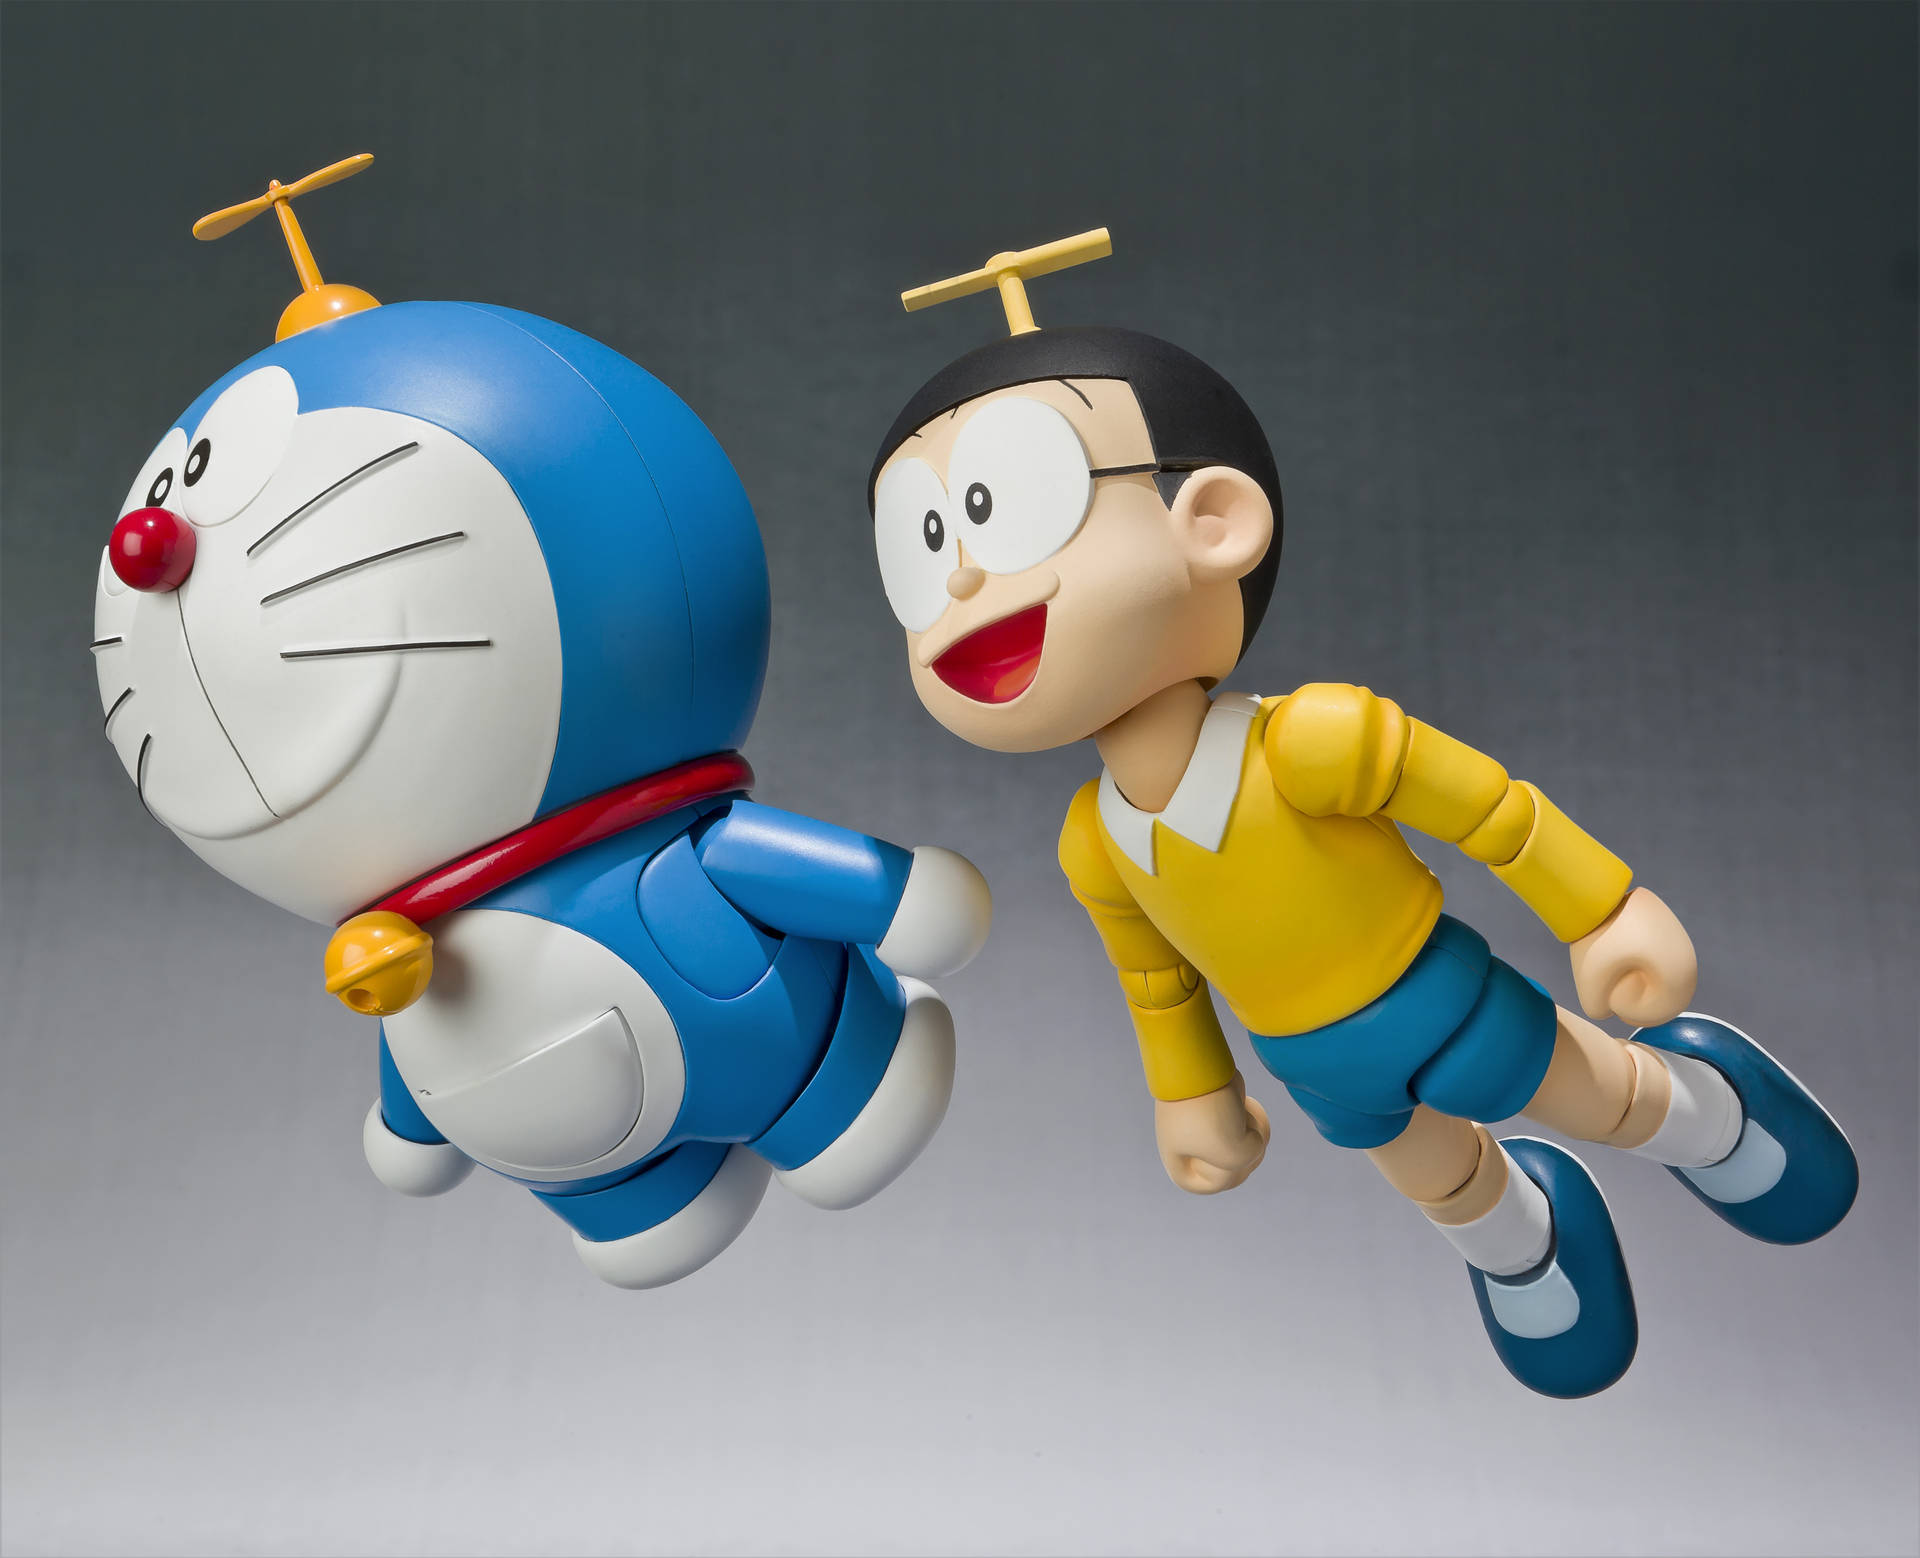 Action Figures Of Nobita Nobi And Doraemon 4k